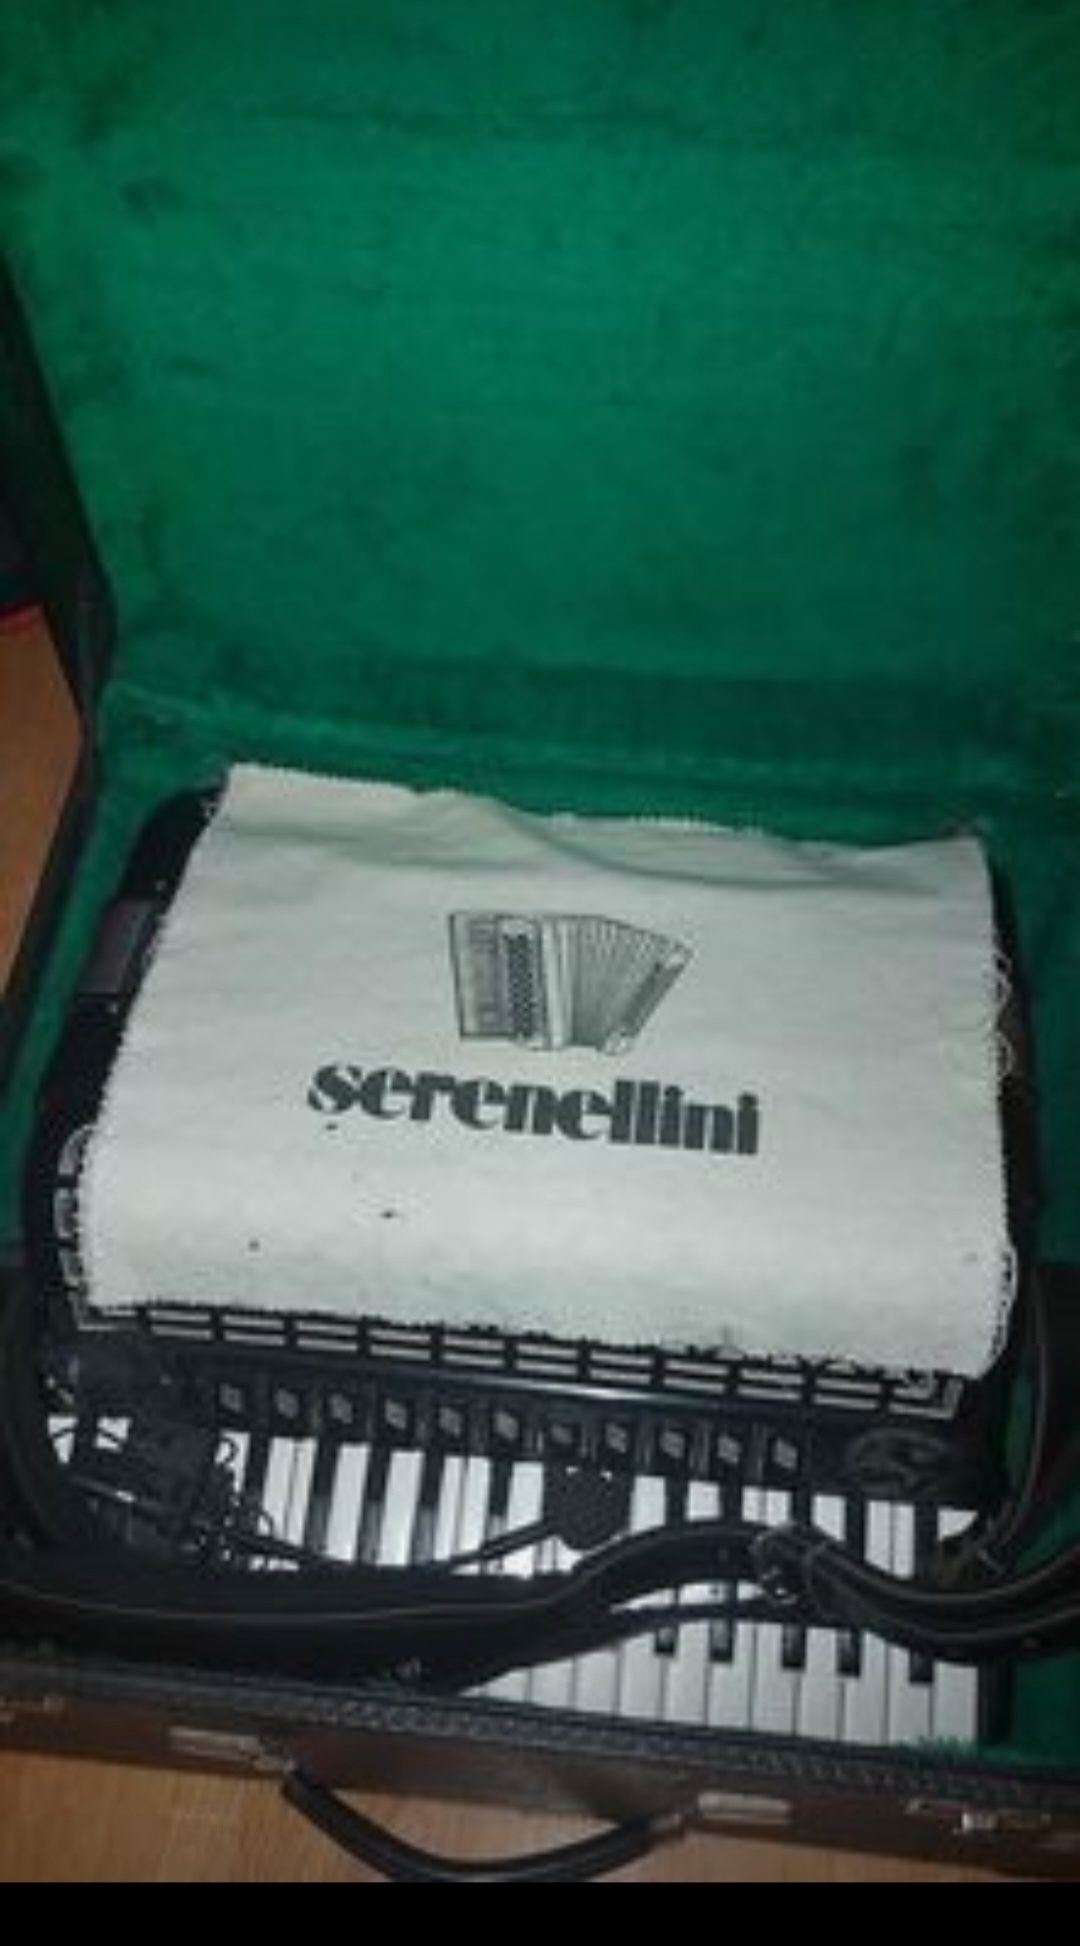 Acordeon Serenellini (italiano)